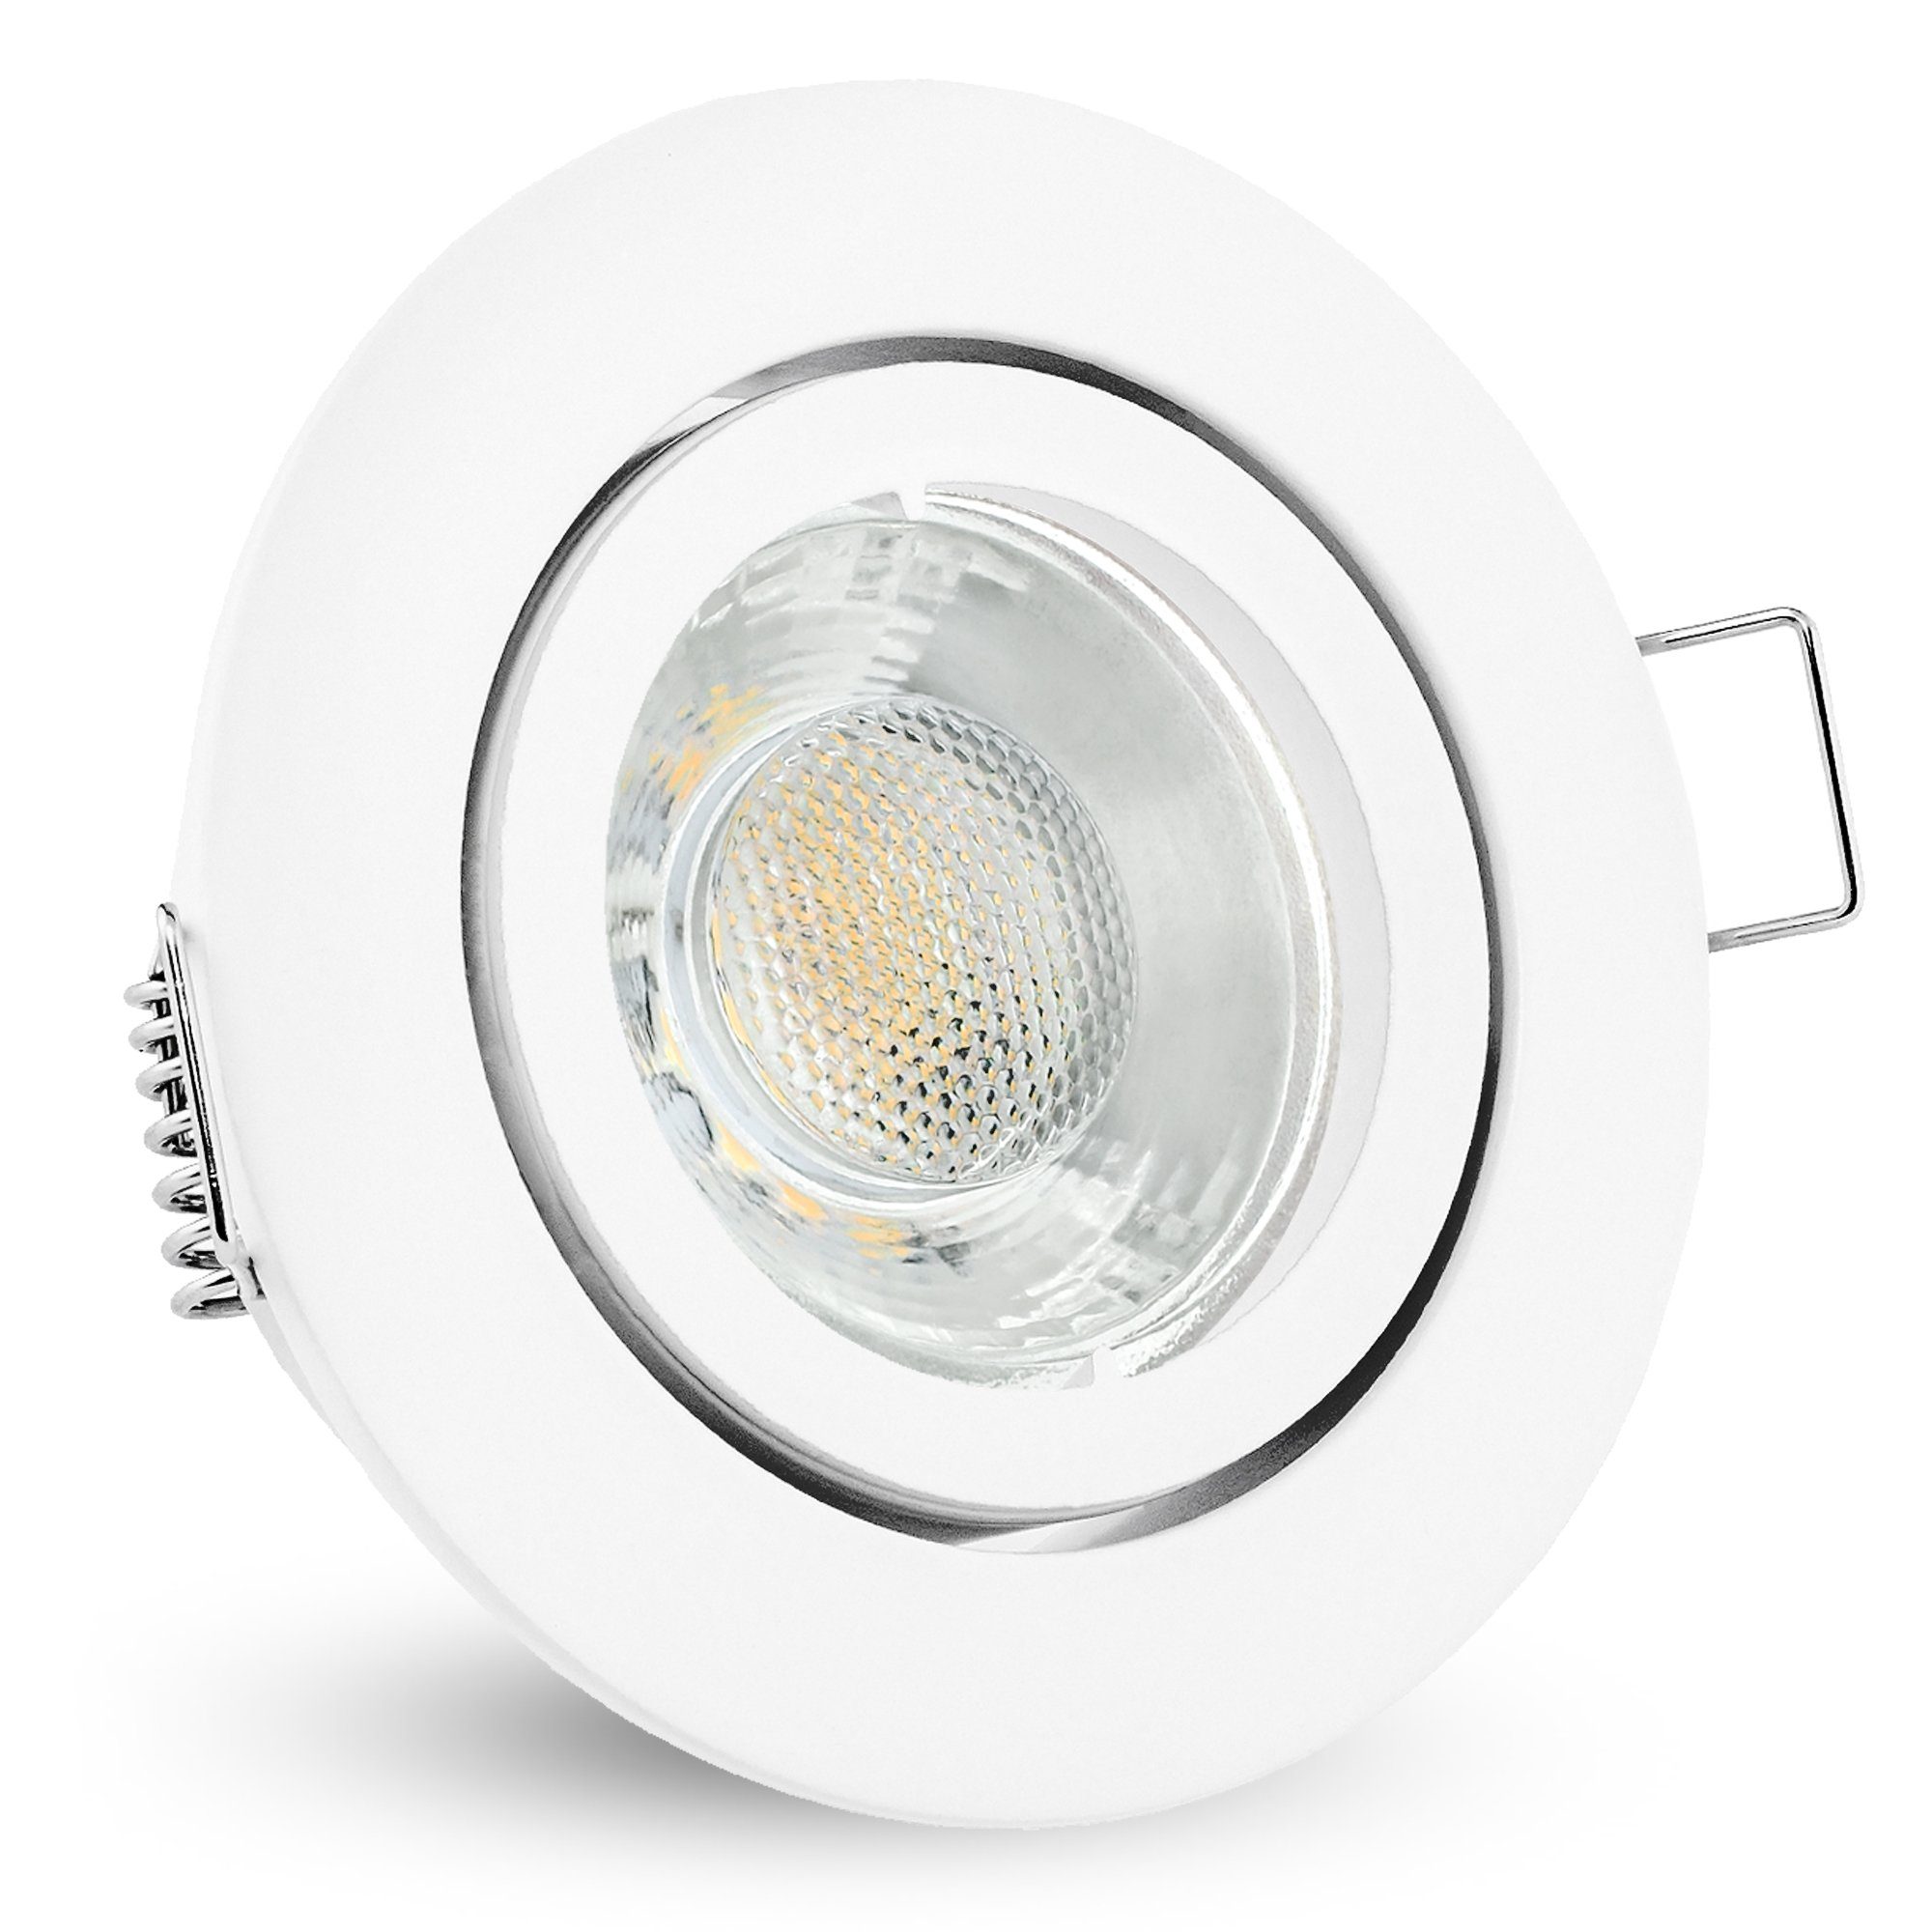 linovum LED Einbaustrahler - Leuchtmittel Leuchtmittel Weiss Einbaustrahler GU10 LED 3W 230V neutralweiss inklusive inklusive, schwenkbar, rund